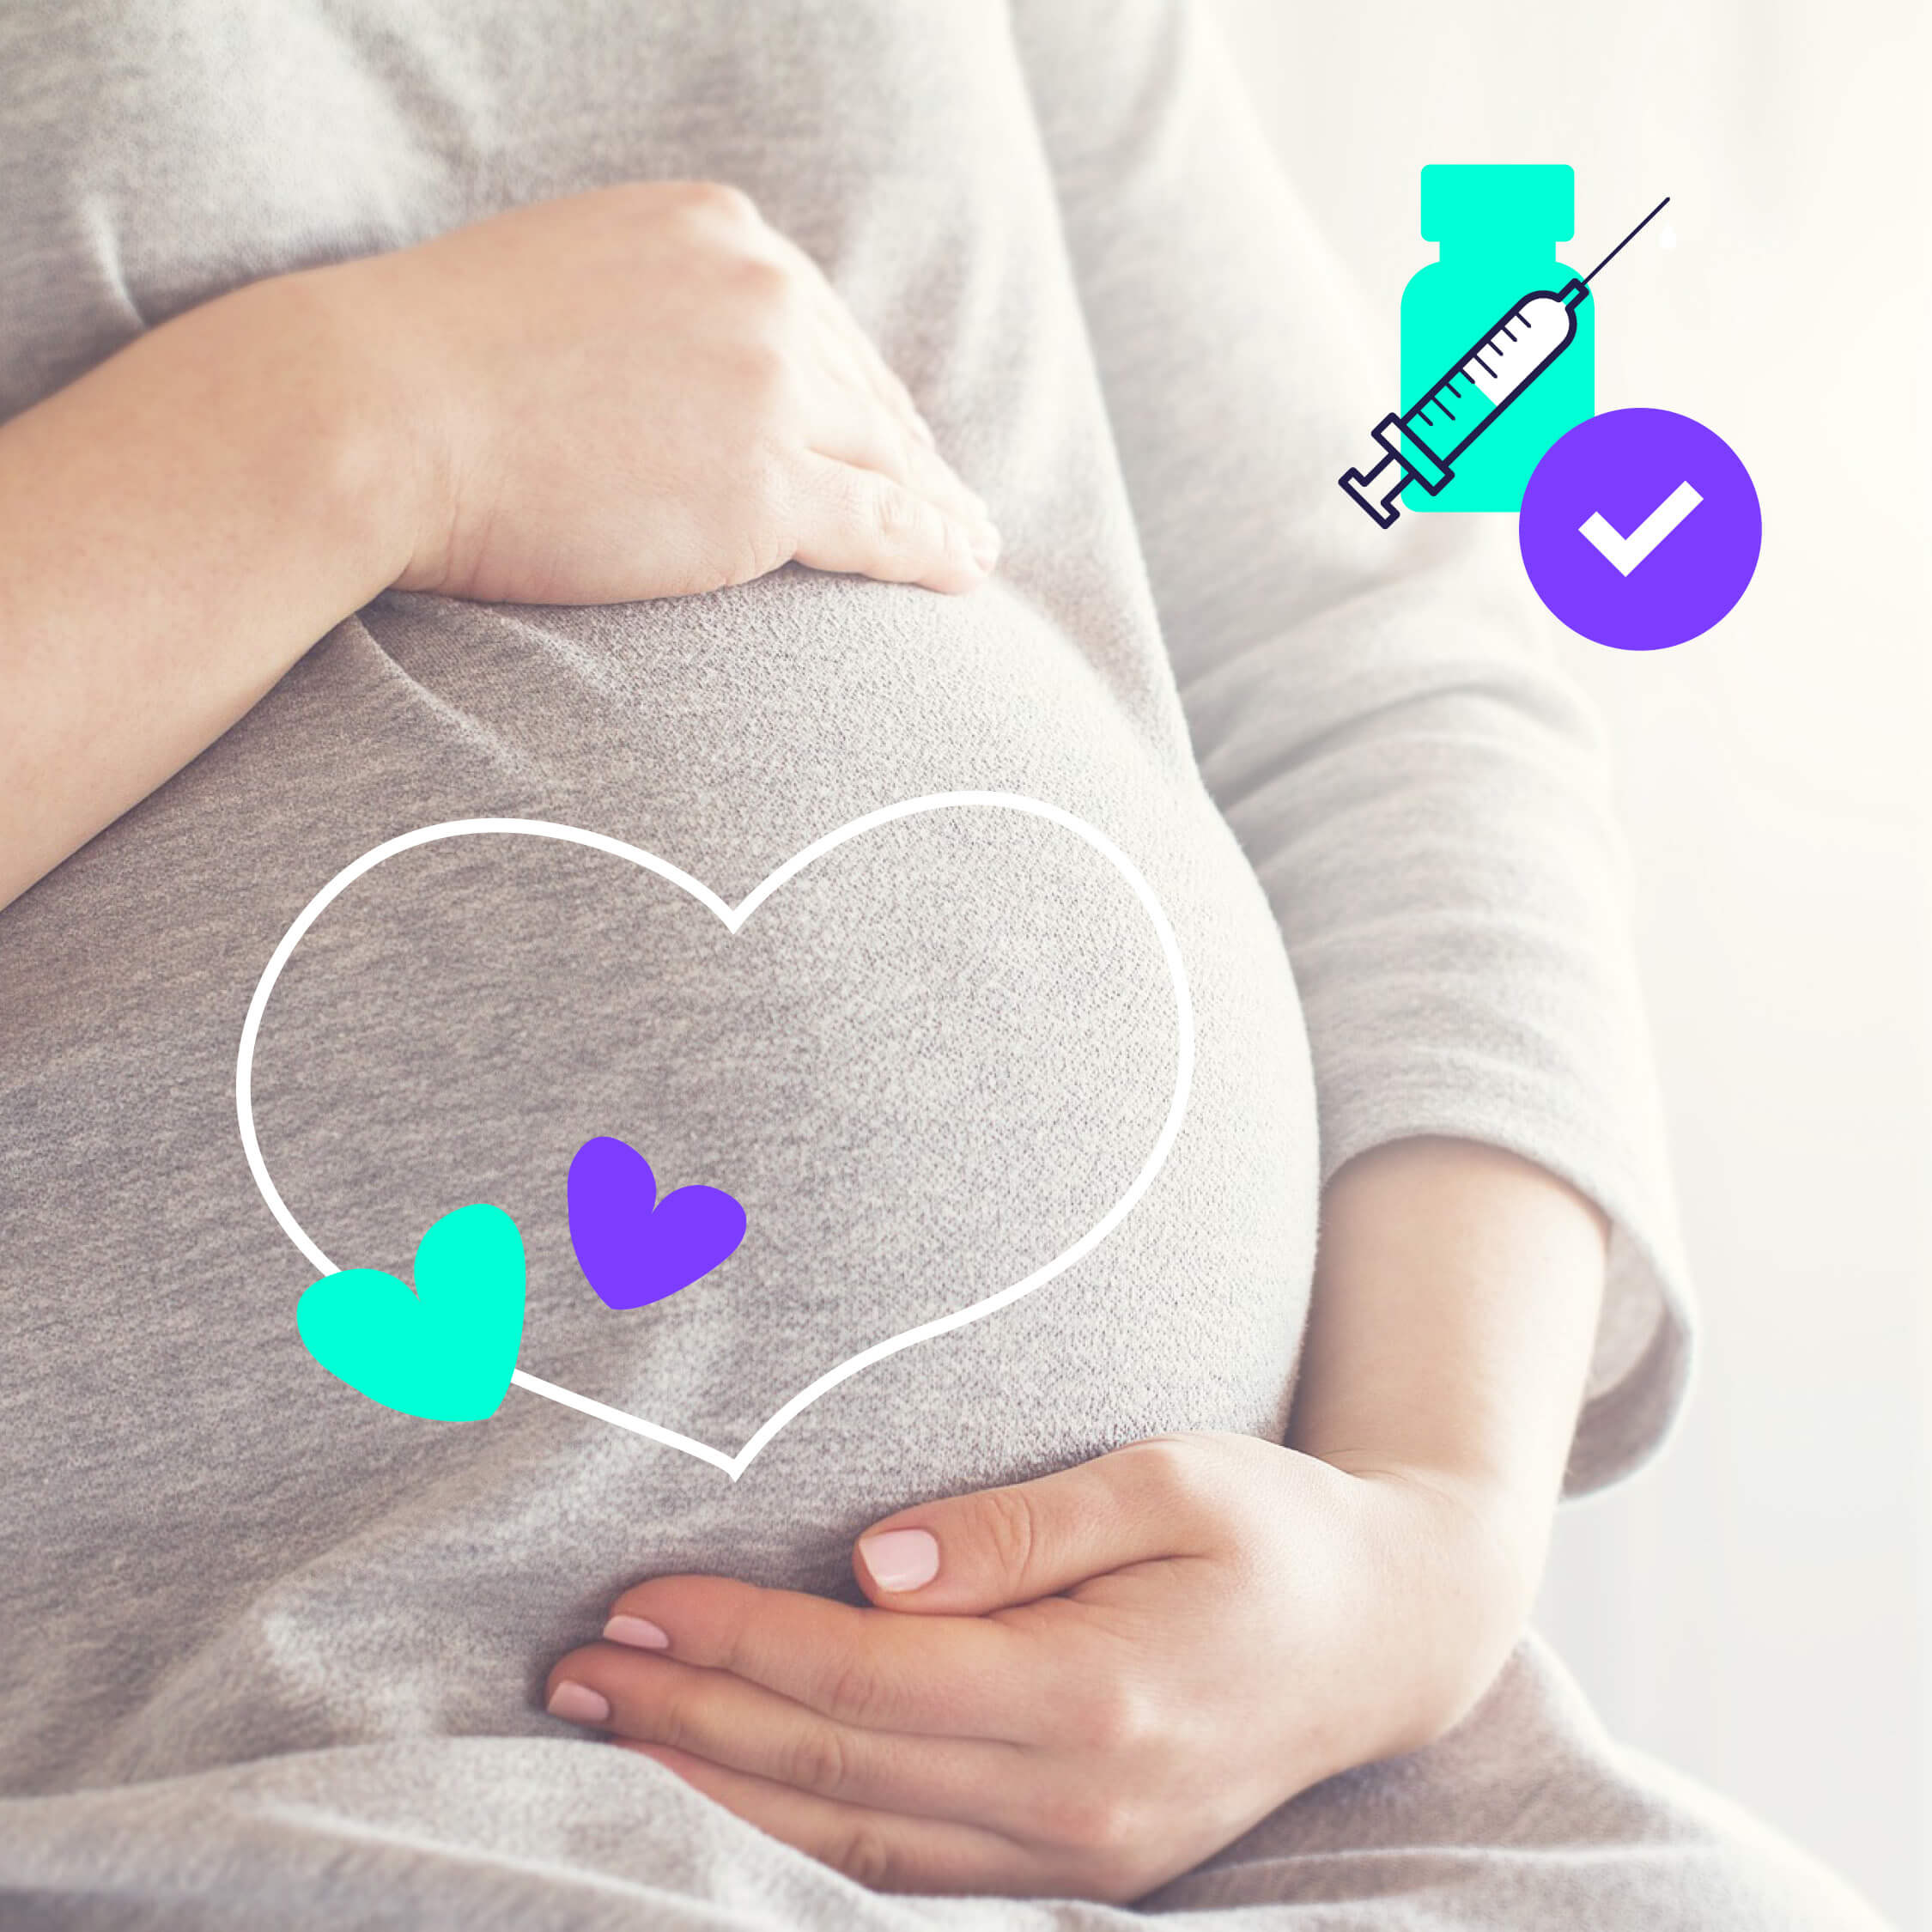 Visuel pour une publication réseaux sociaux sur l'impact des vaccins sur les femmes enceintes